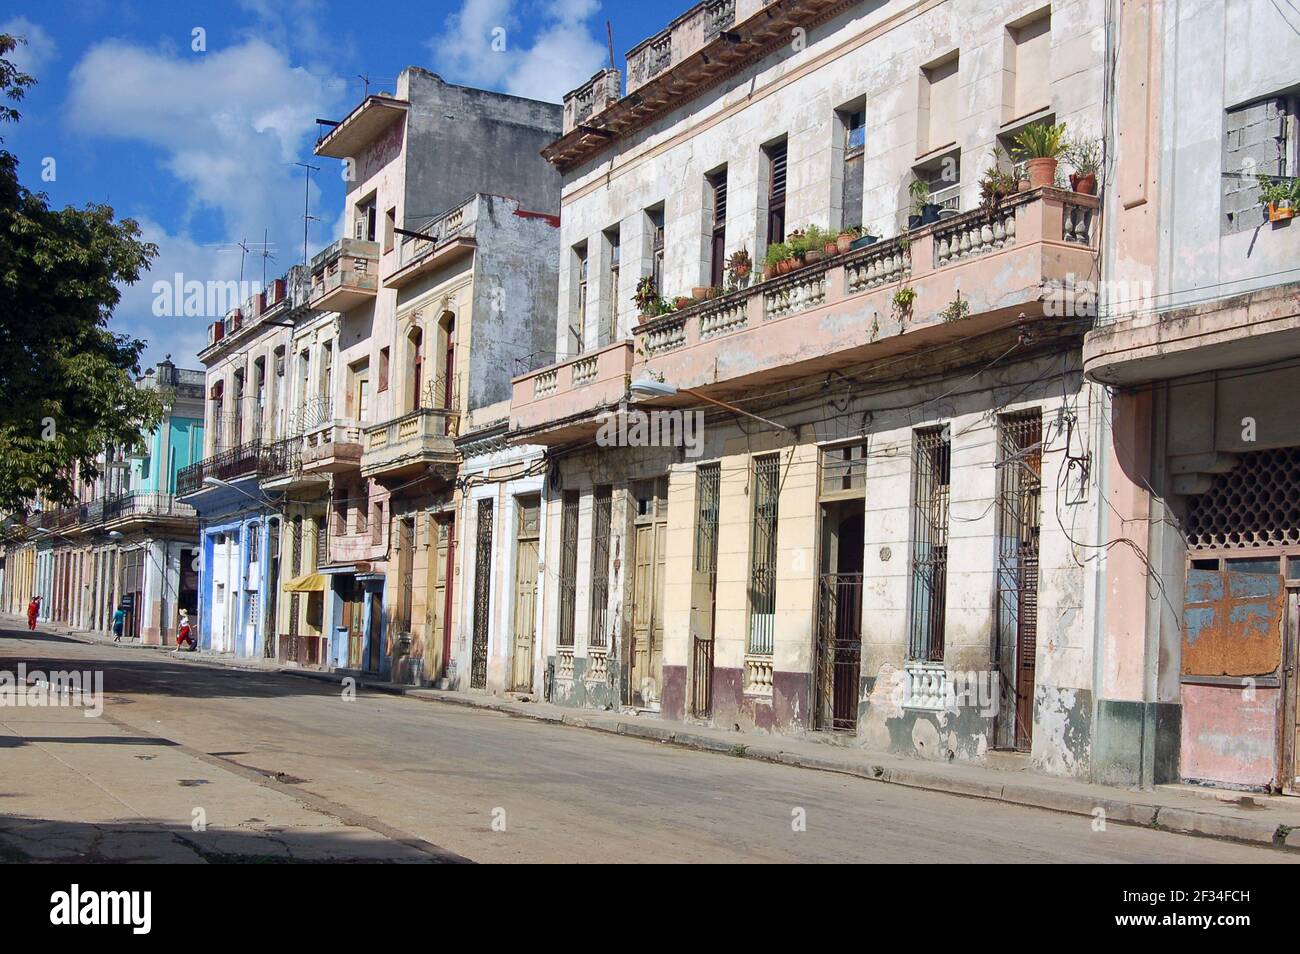 La Havane, Cuba - le 14 novembre 2007 : piétons marchant le long d'une rue résidentielle dans le centre de la Havane avec des maisons élégantes et en panne. Banque D'Images